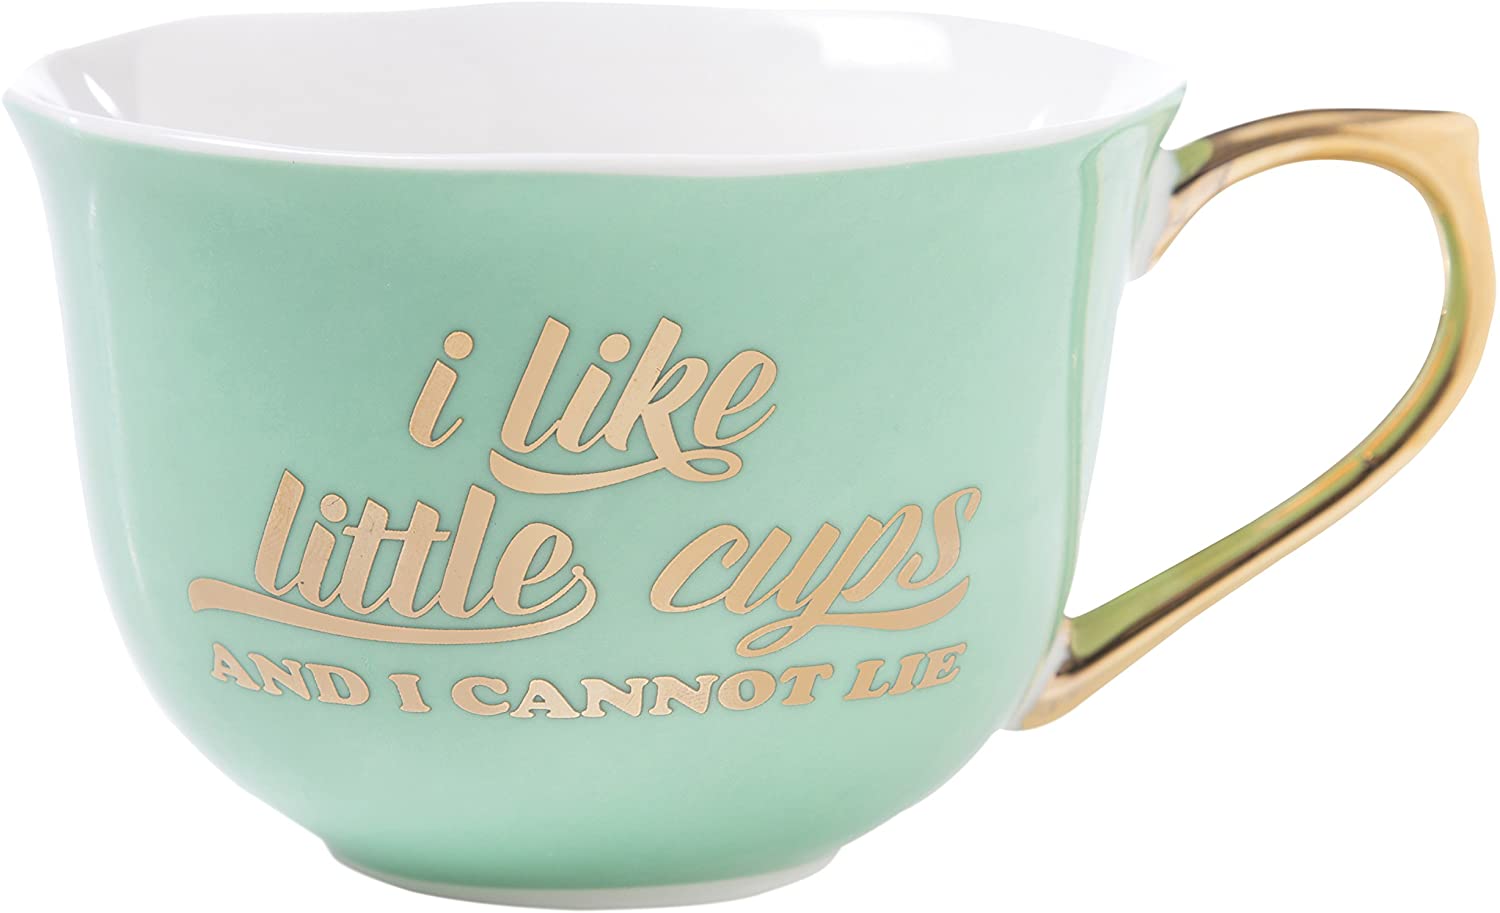 I Like Little Cups - Saucer Set